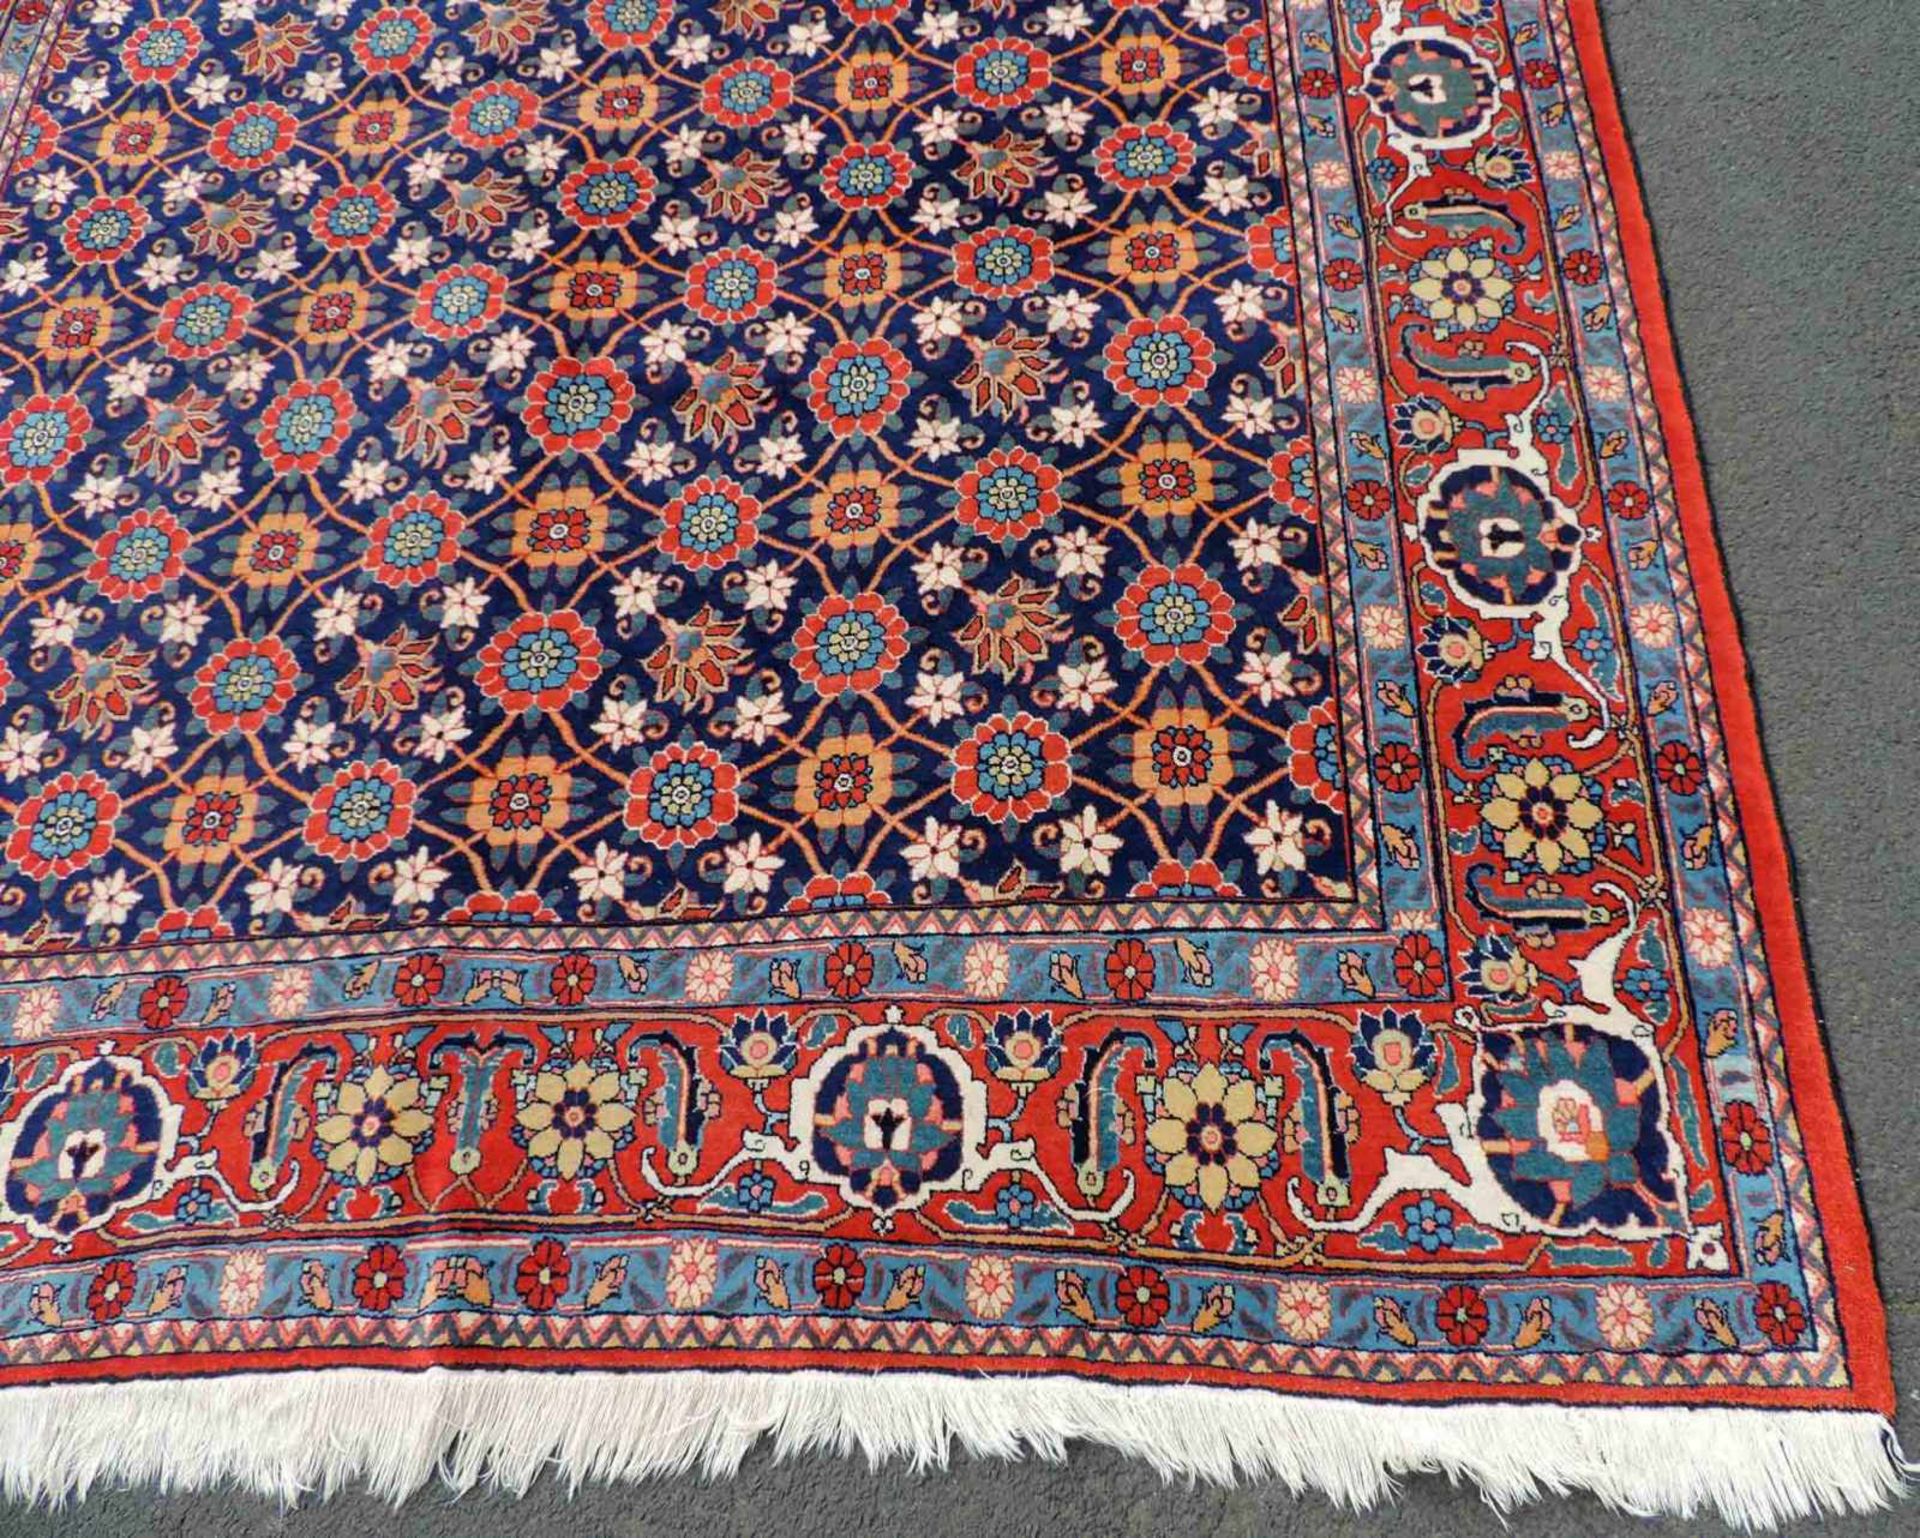 Weramin Manfakturteppich. Iran, alt, um 1940. 308 cm x 210 cm. Handgeknüpft. Wolle auf Baumwolle. - Bild 3 aus 7